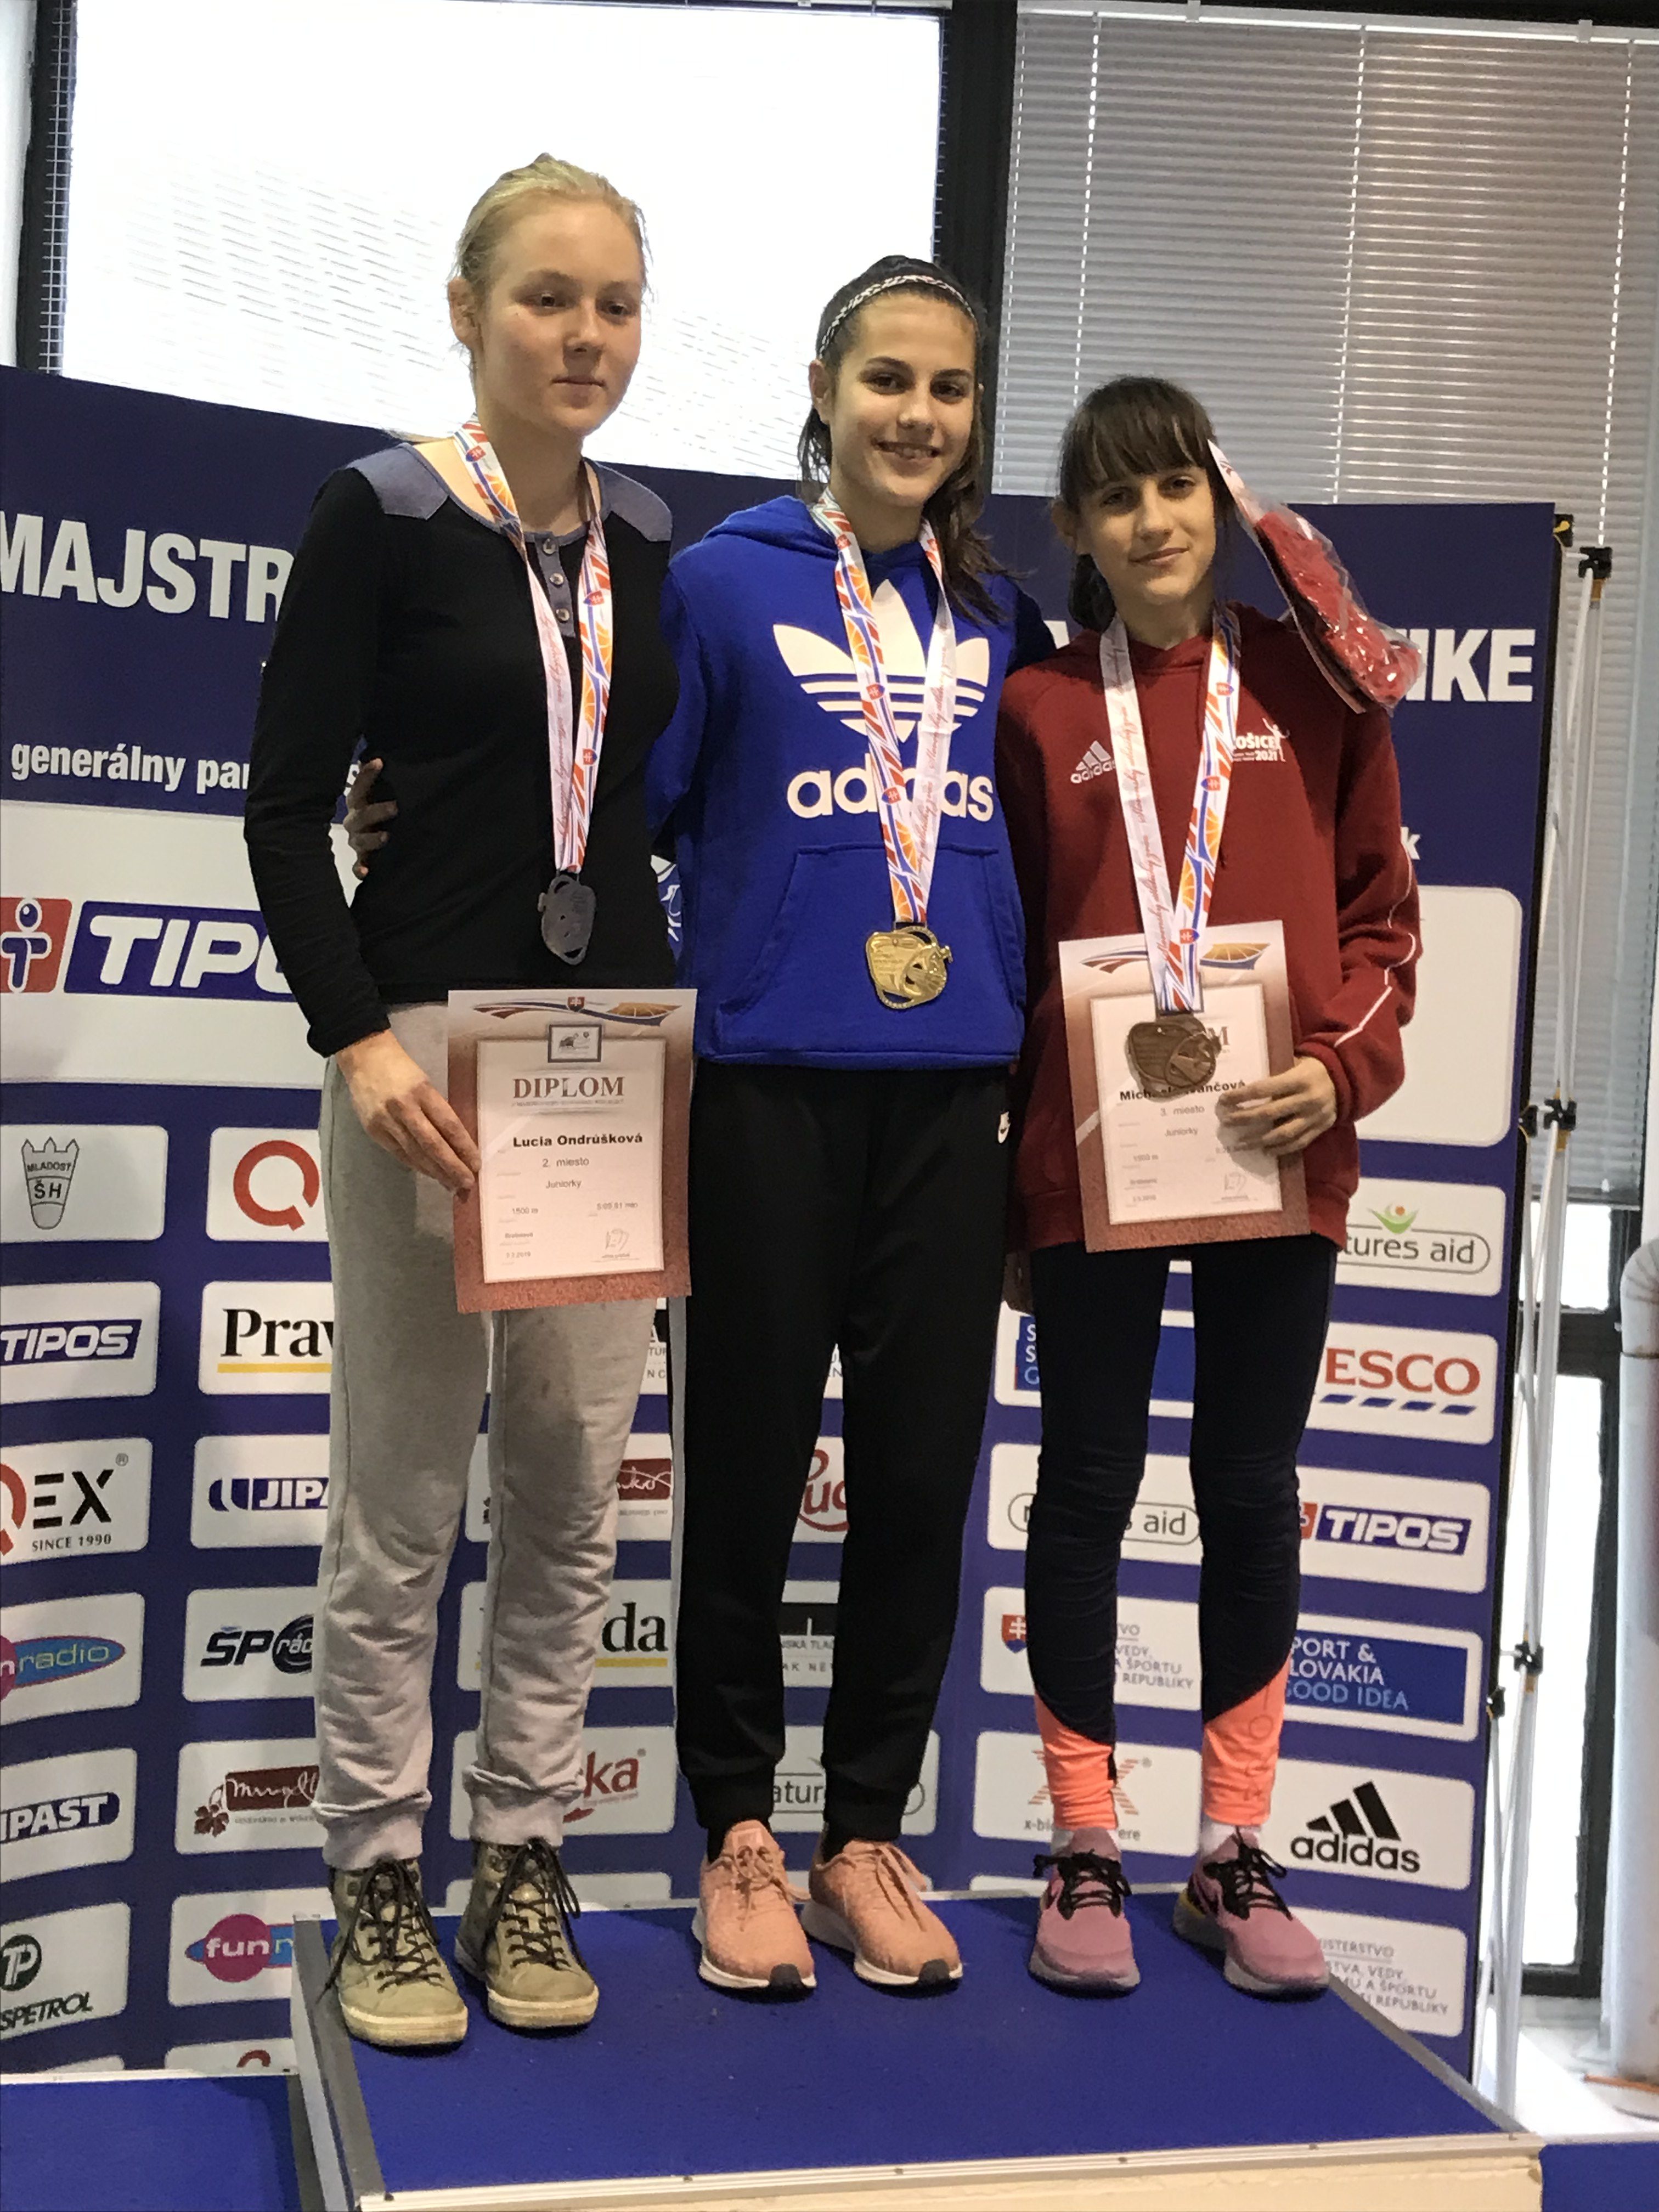 Majstrovstvá Slovenska junioriek v atletike v hale